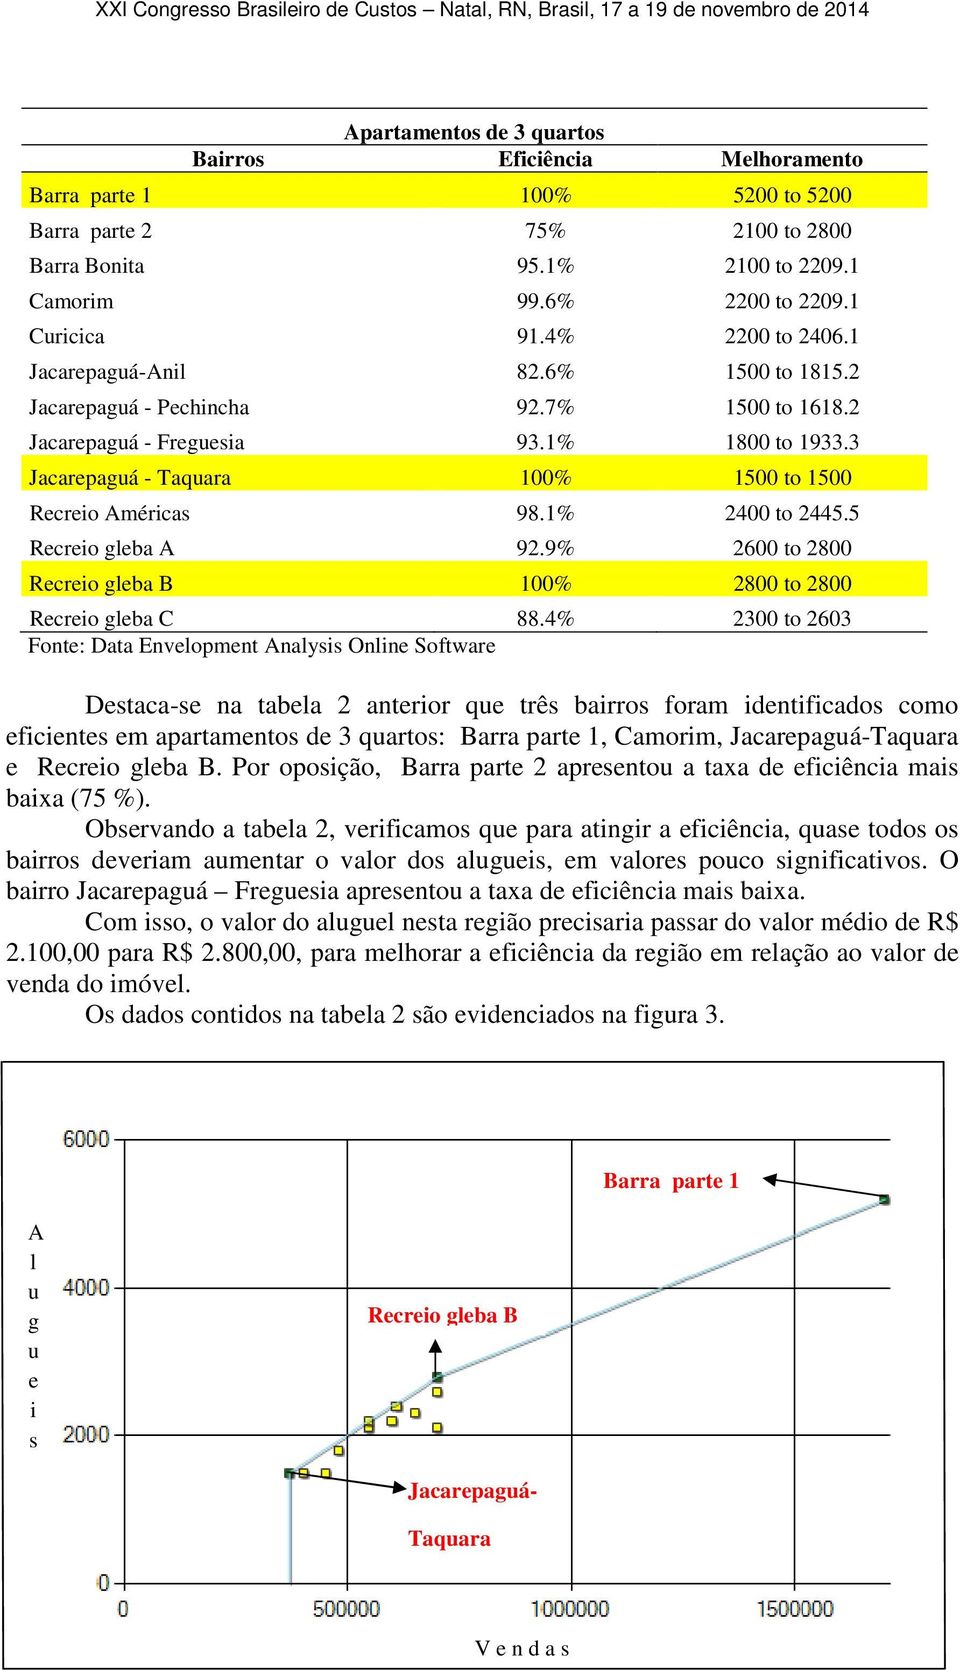 3 Jacarepaguá - Taquara 100% 1500 to 1500 Recreio Américas 98.1% 2400 to 2445.5 Recreio gleba A 92.9% 2600 to 2800 Recreio gleba B 100% 2800 to 2800 Recreio gleba C 88.